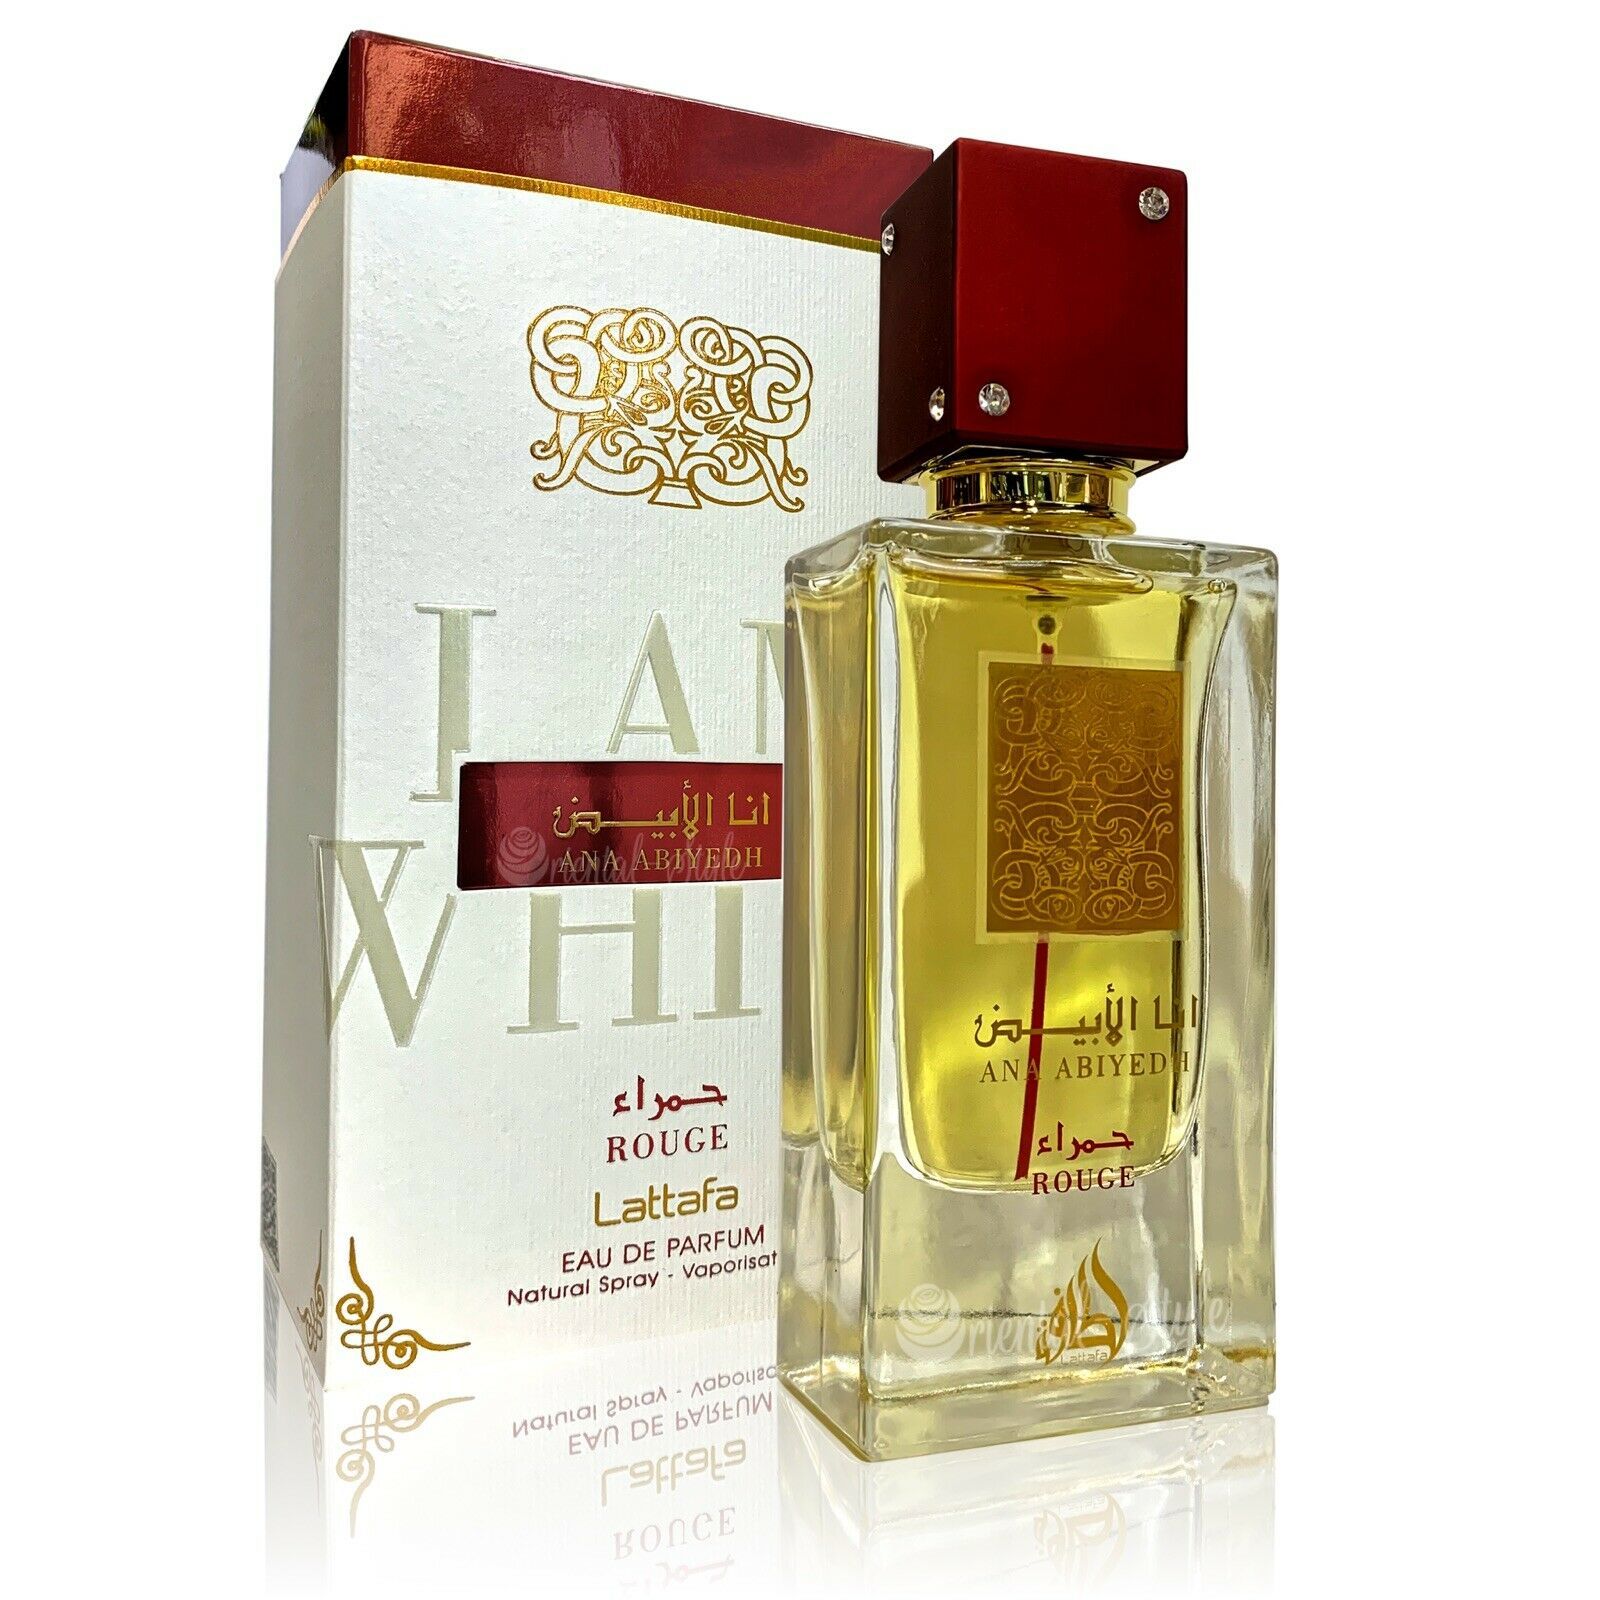 I Am White Rouge Ed By Lattafa Perfumes:On Par w/ Famous Rouge Fragrance